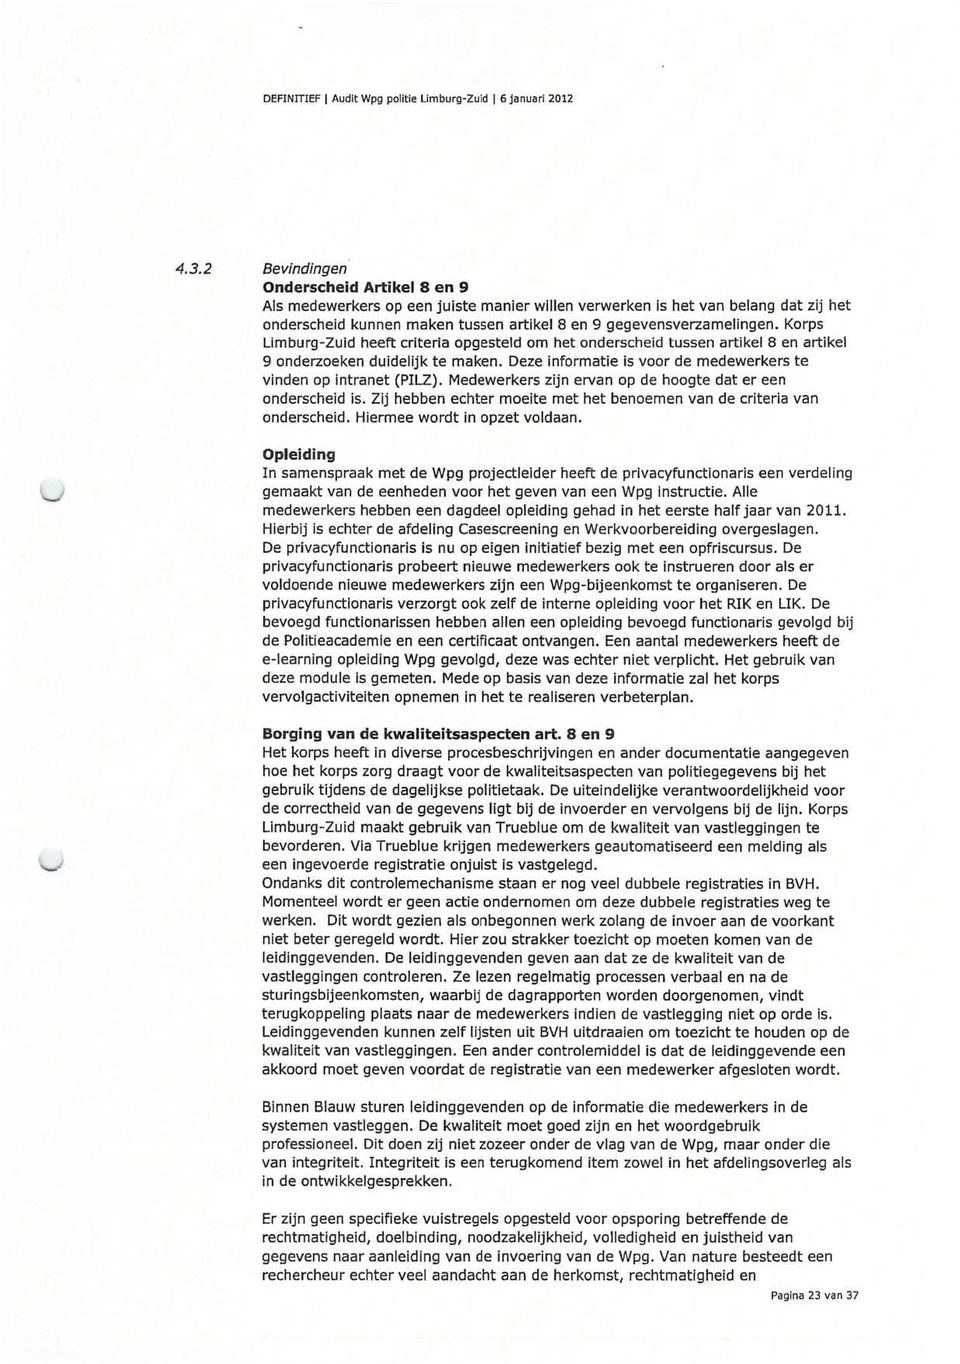 Korps Limburg-Zuid heeft criteria opgesteld om het onderscheid tussen artikel 8 en artikel 9 onderzoeken duidelijk te maken. Deze informatie is voor de medewerkers te vinden op intranet (PILZ).